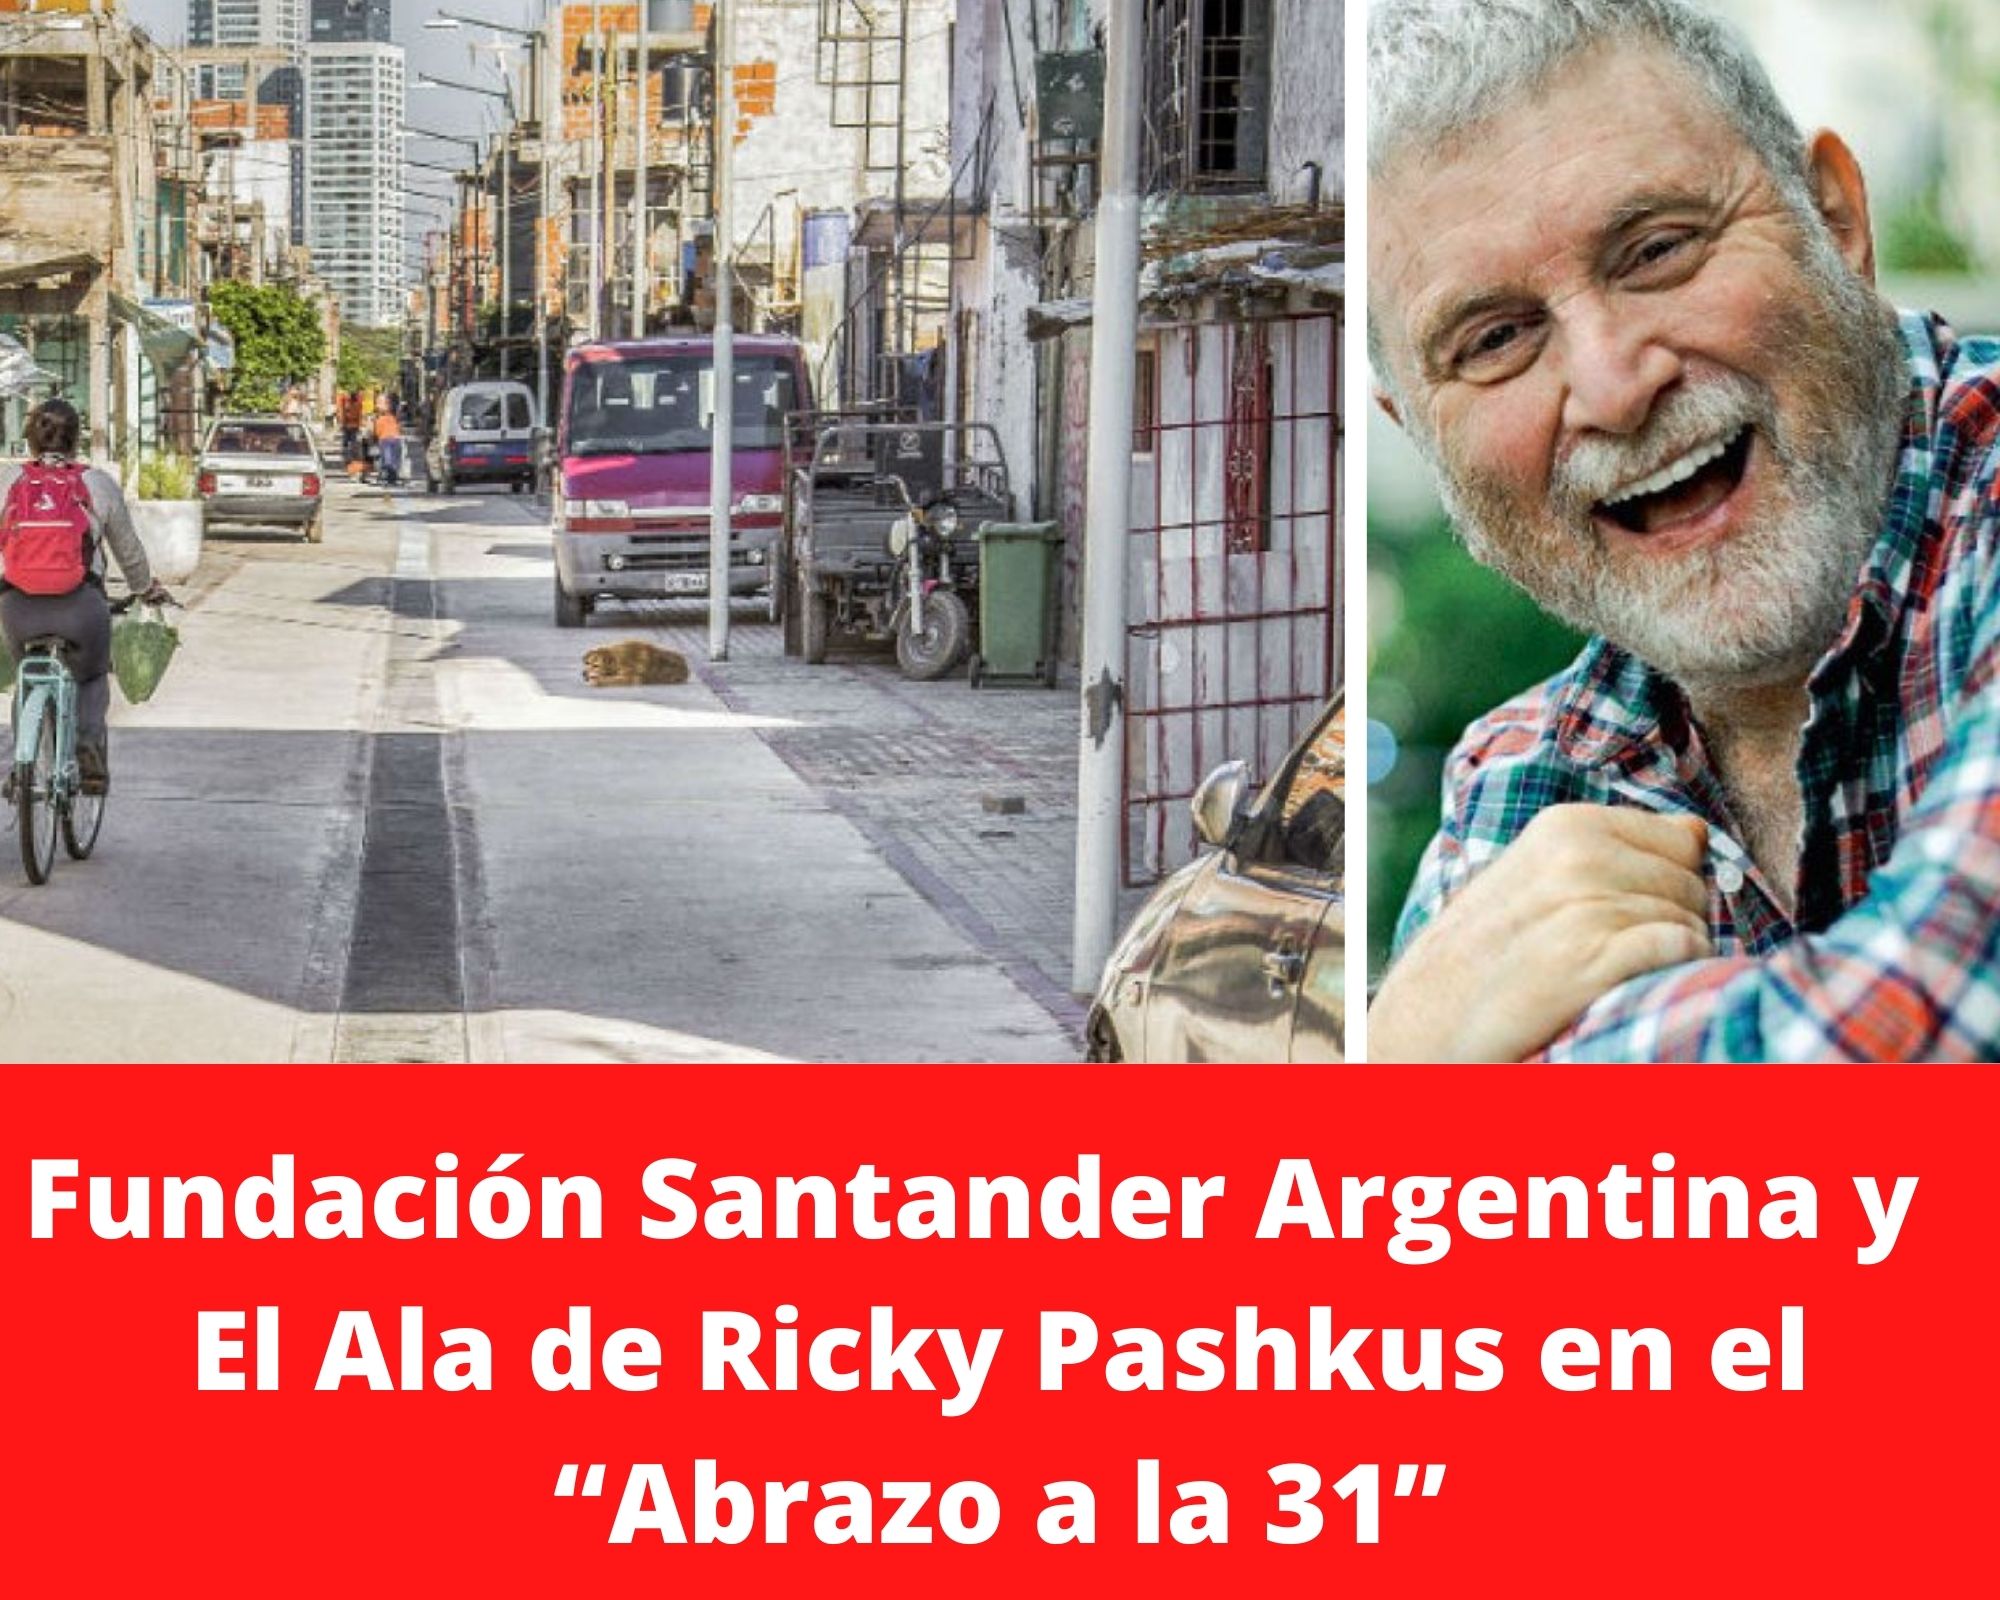 Ricky Pashkus y Fundación Santander por el “Abrazo a la 31”